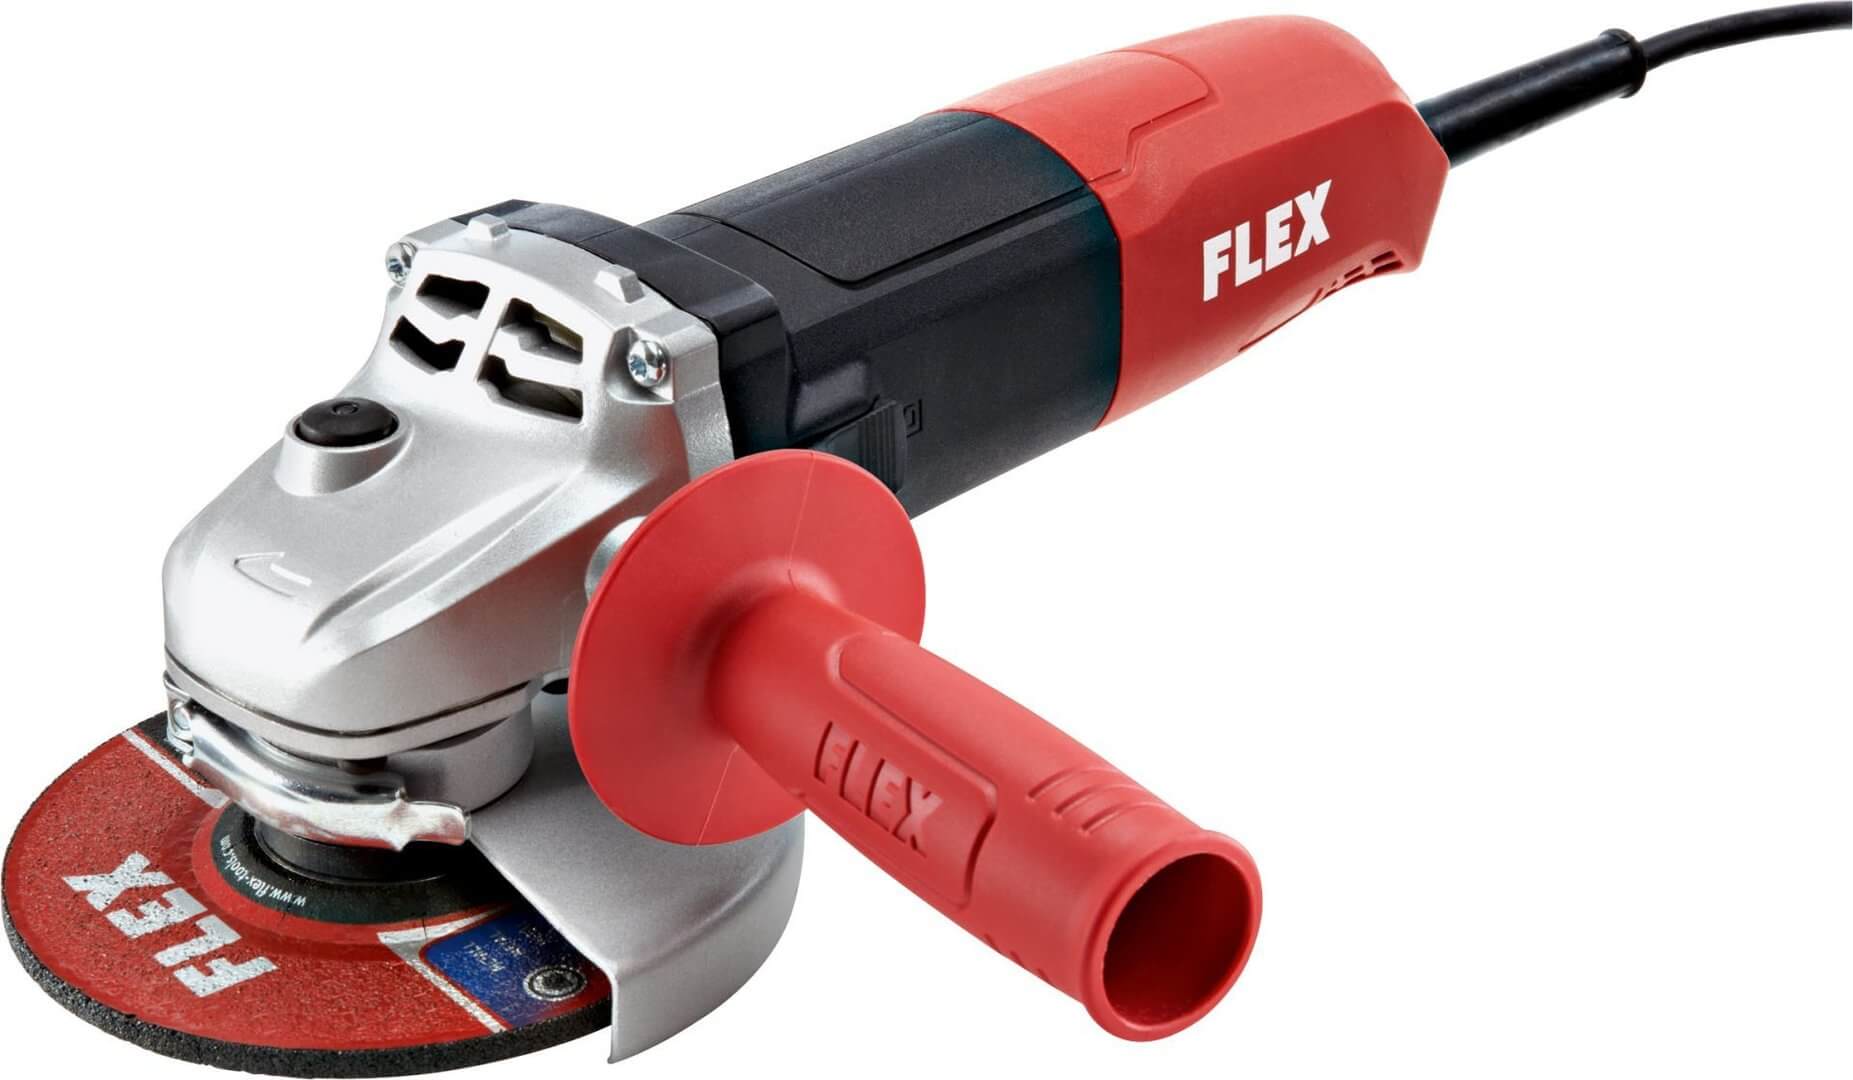 Flex Flex L811 Winkelschleifer 125 mm / 800 Watt